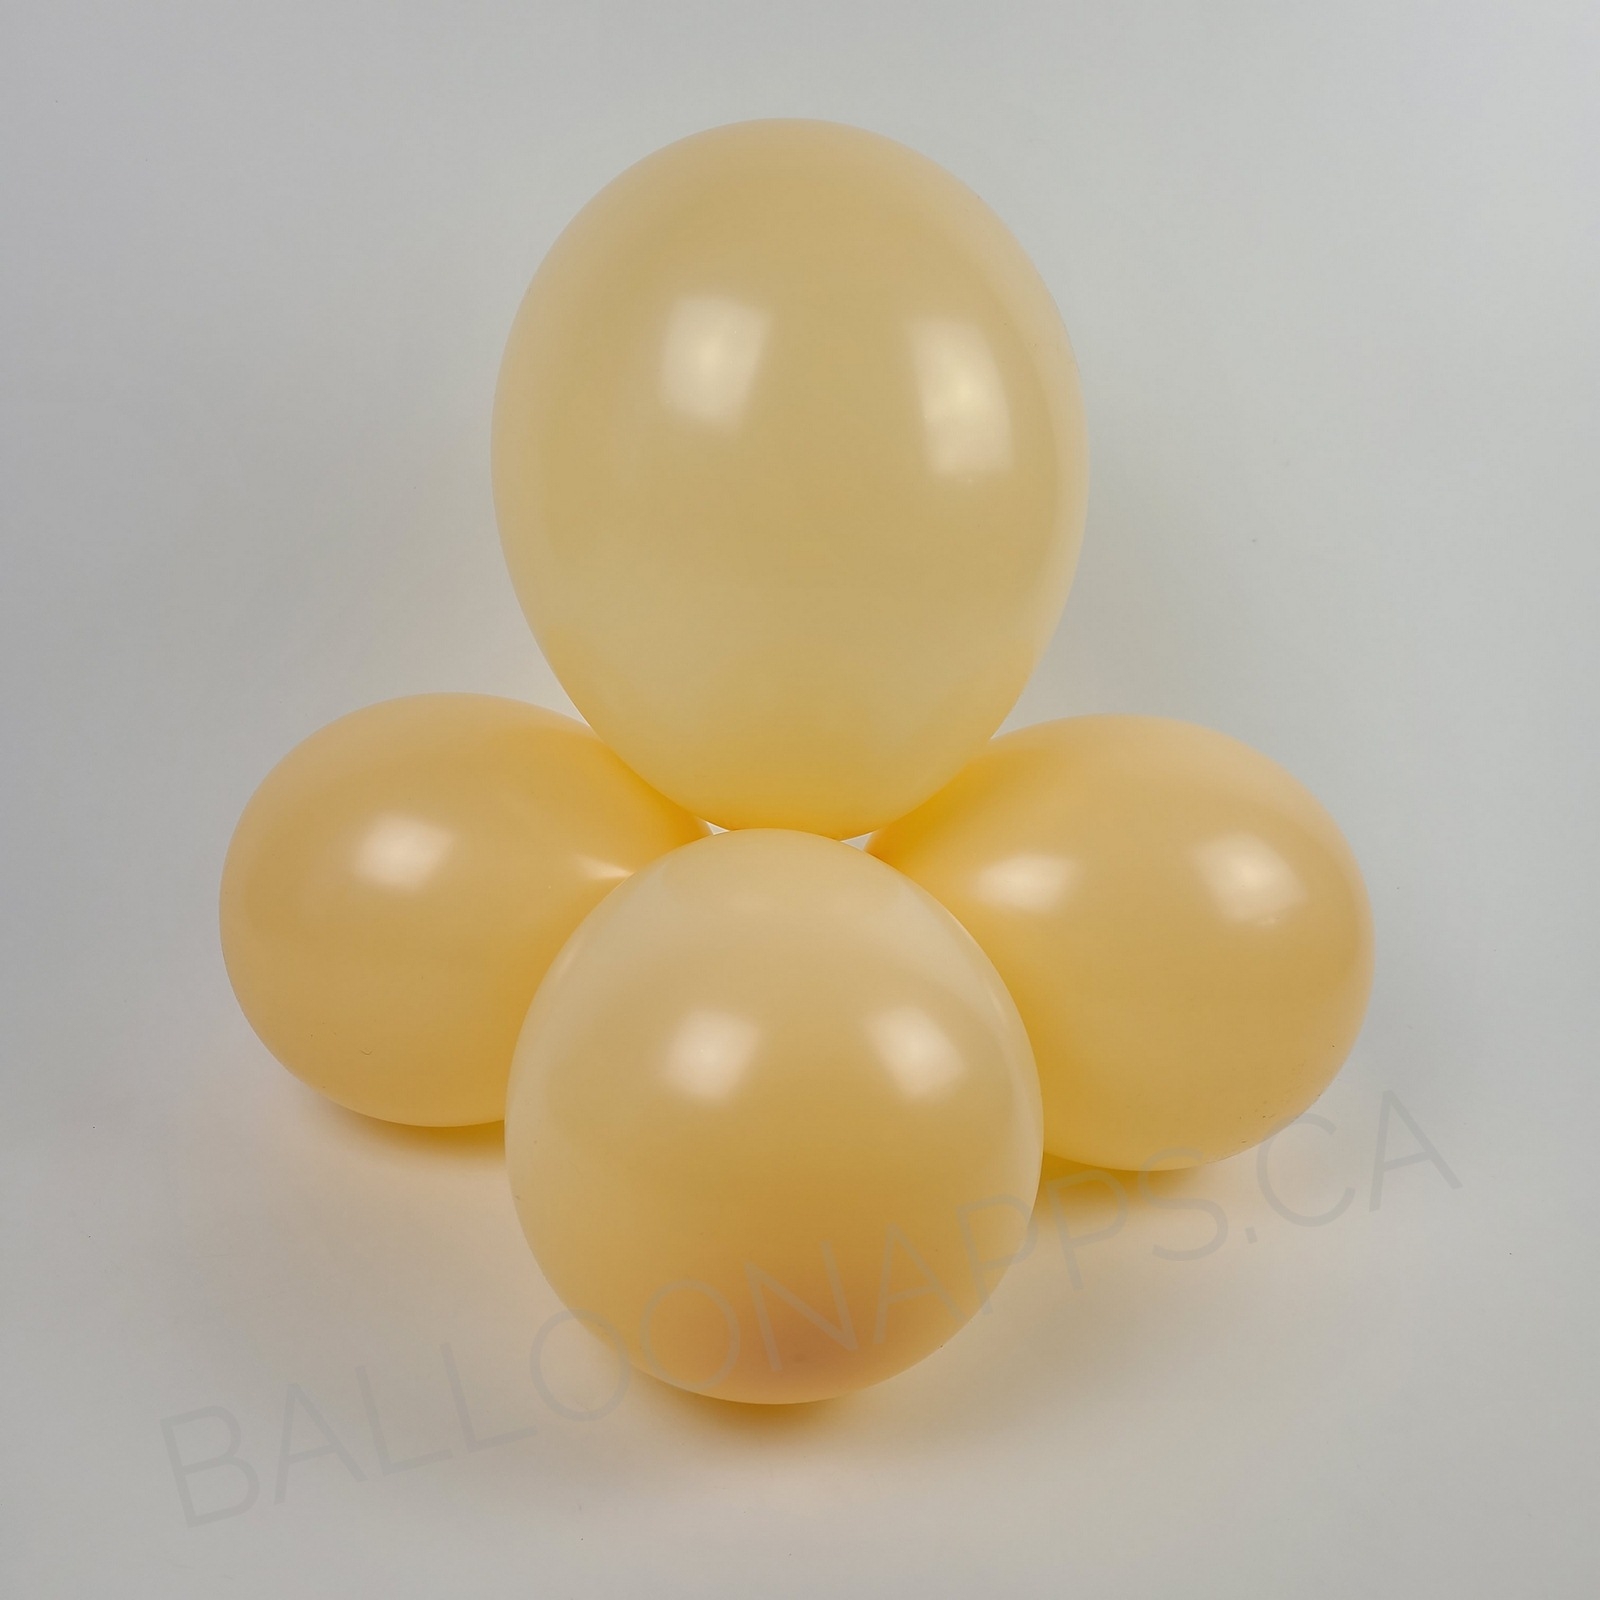 balloon texture BET (100) 5